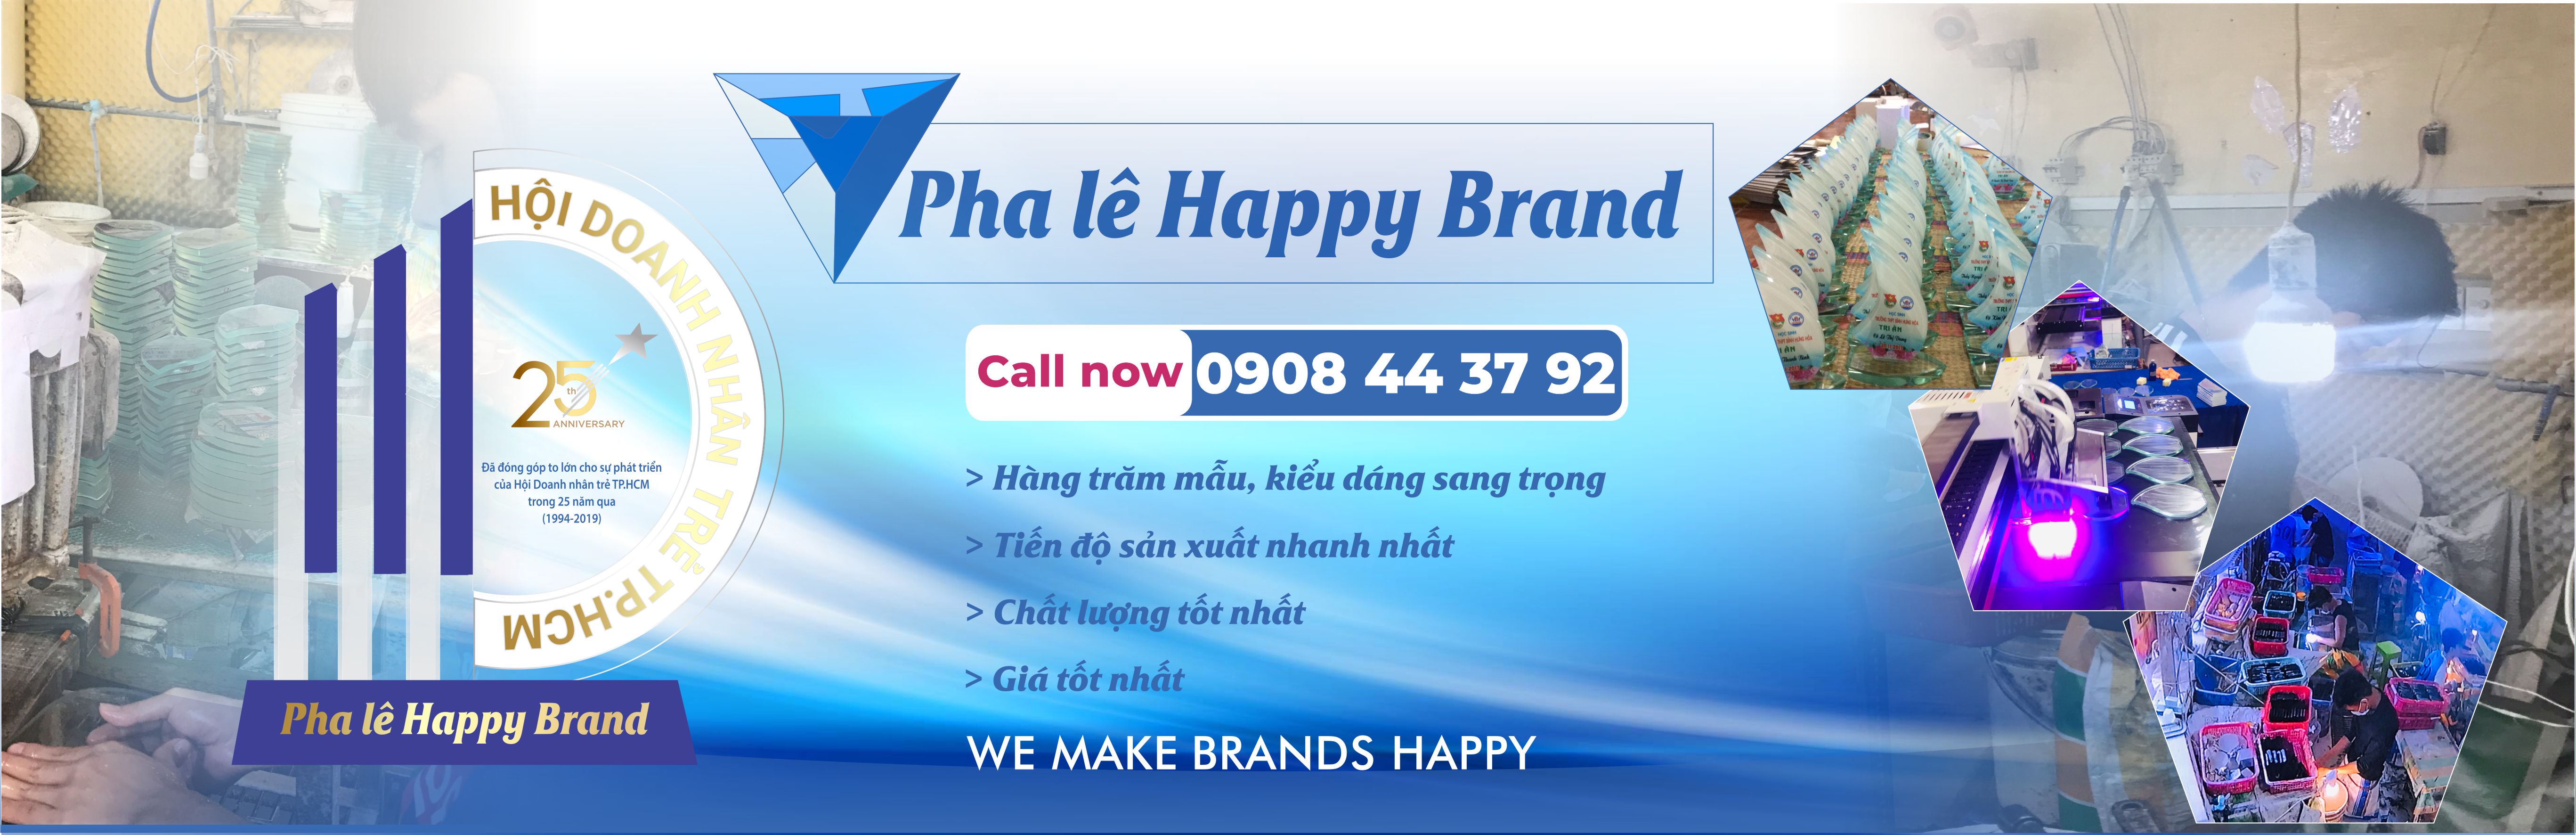 Pha lê Happy Brand – Pha lê Happy brand